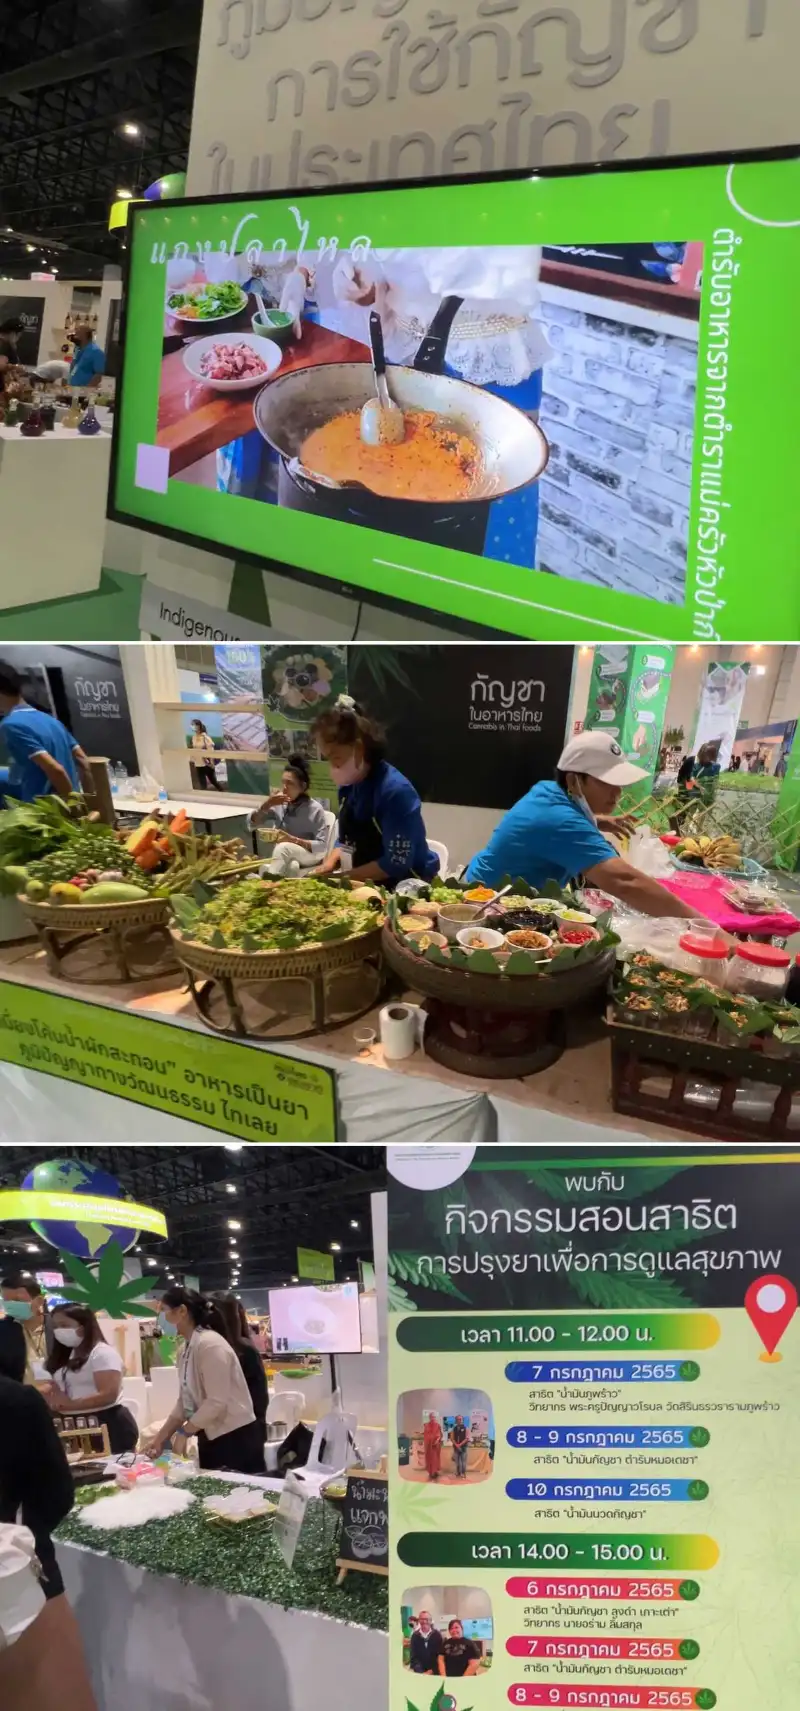 อาหารและยากัญชา ภูมิปัญญาไทยในการใช้กัญชา เที่ยวชมบรรยากาศงาน สมุนไพรแห่งชาติ ปีนี้ (2565) กัญชาเด่น เป็นพระเอก